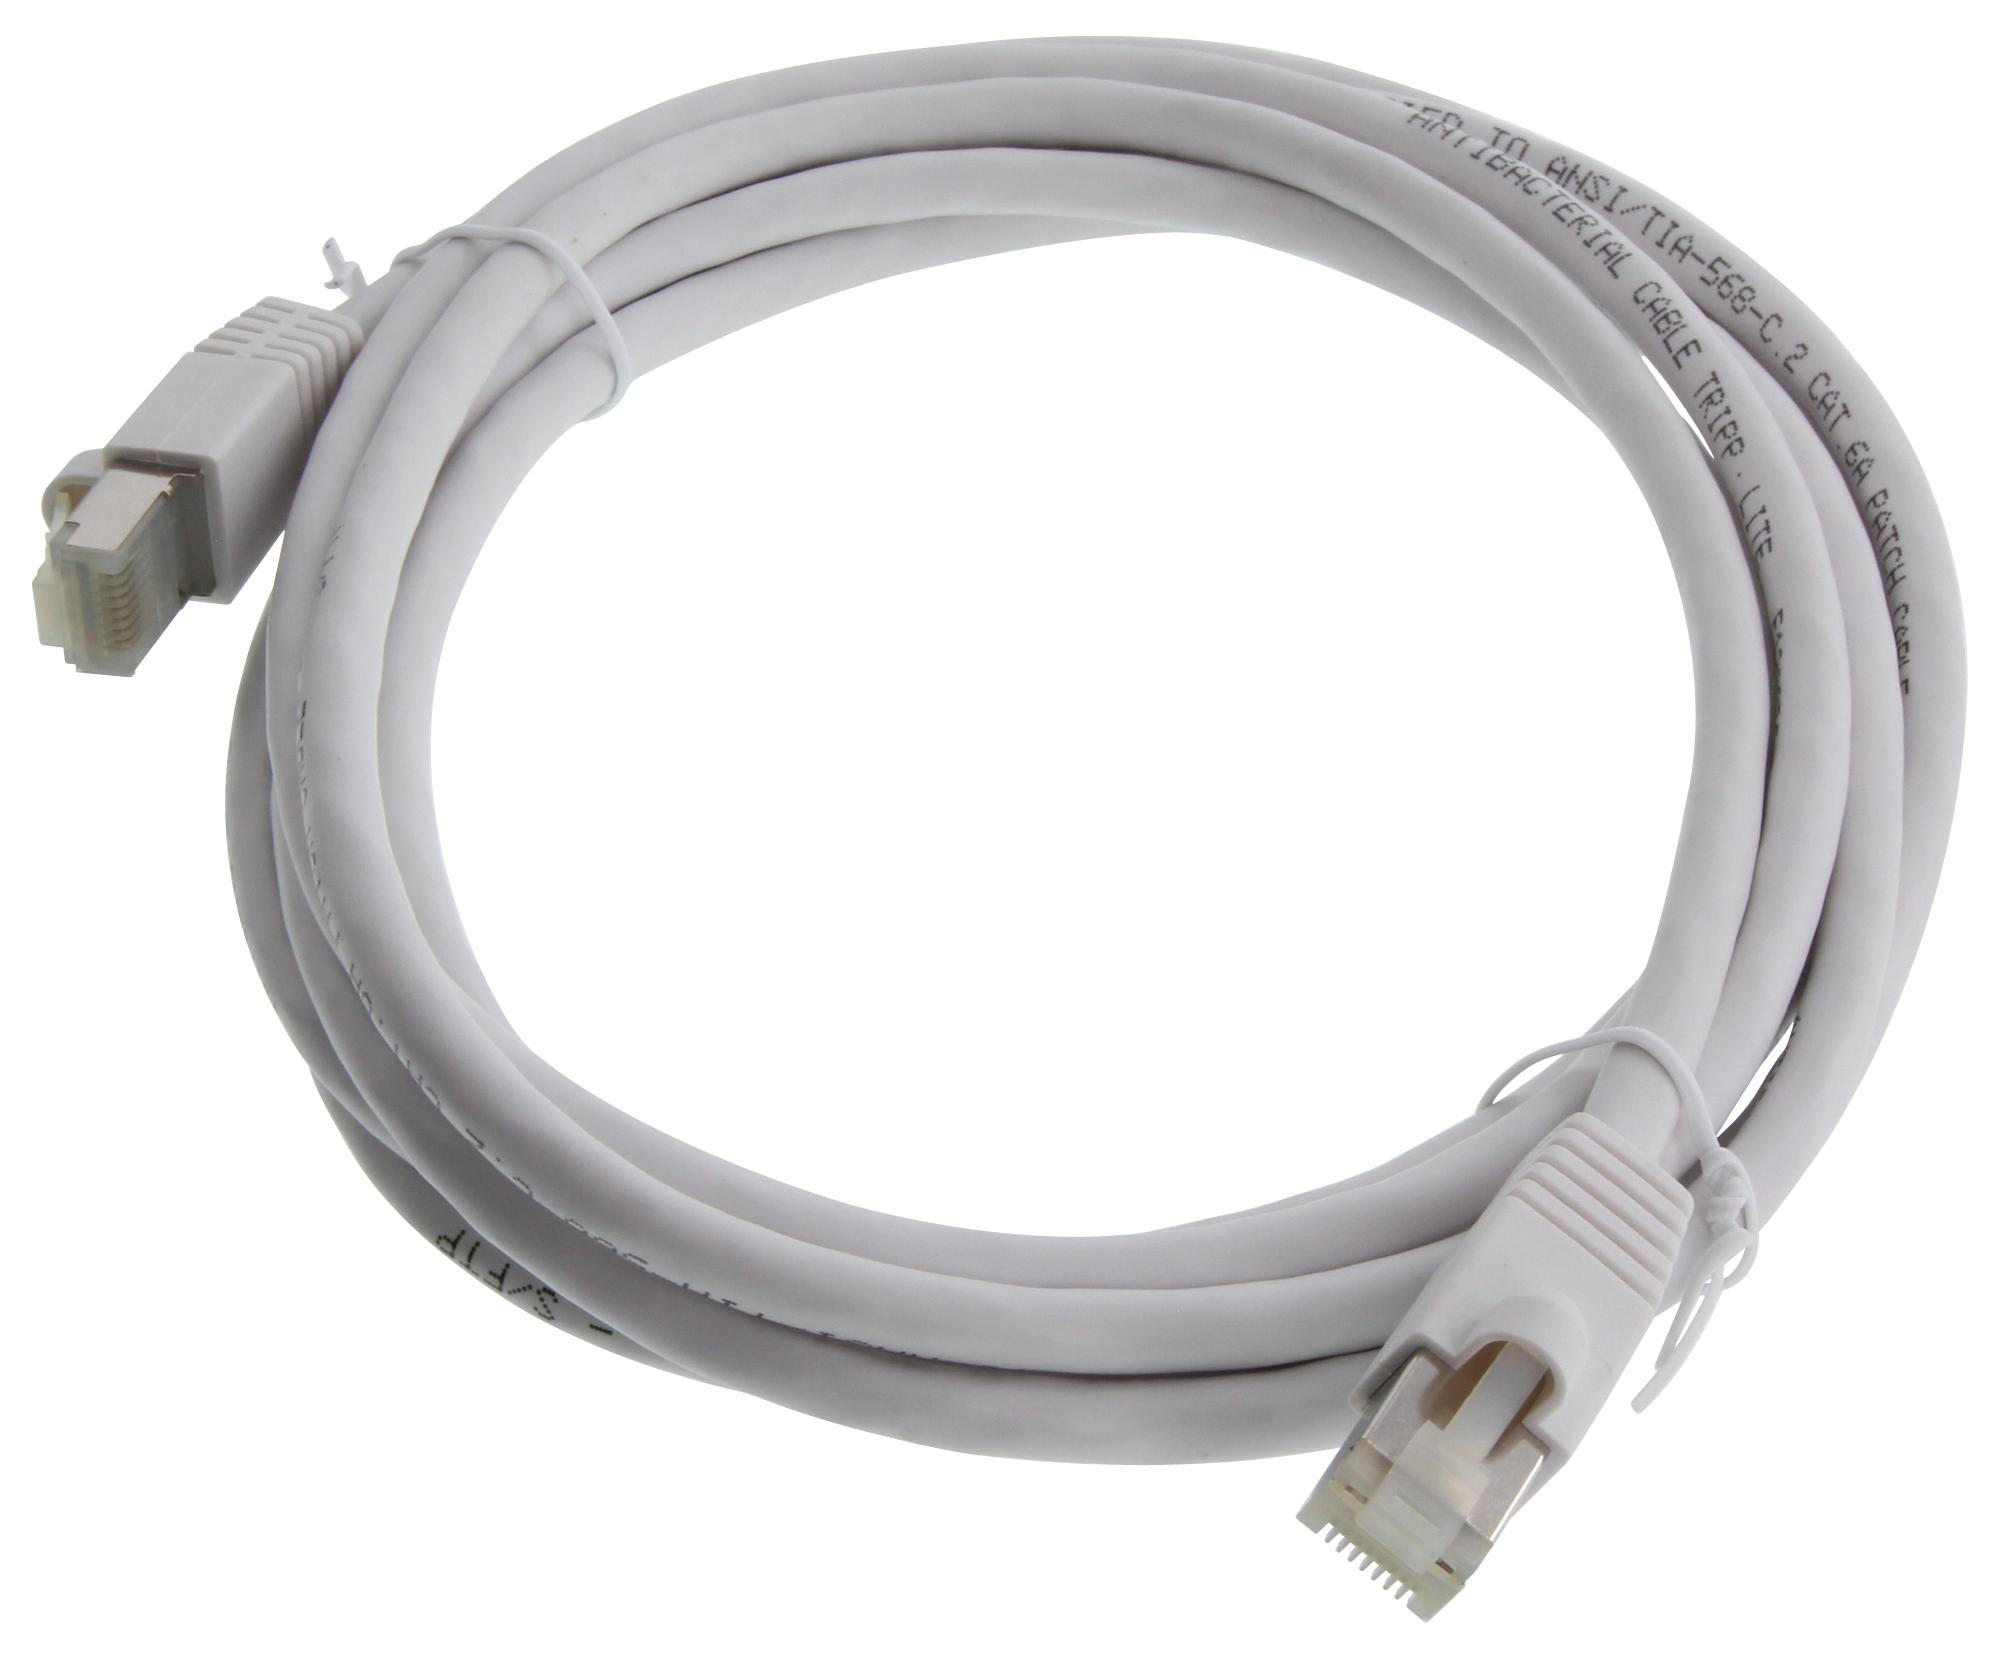 Eaton Tripp Lite N262Ab-010-Wh Enet Cable, Rj45 Plug-Plug, 10Ft, White